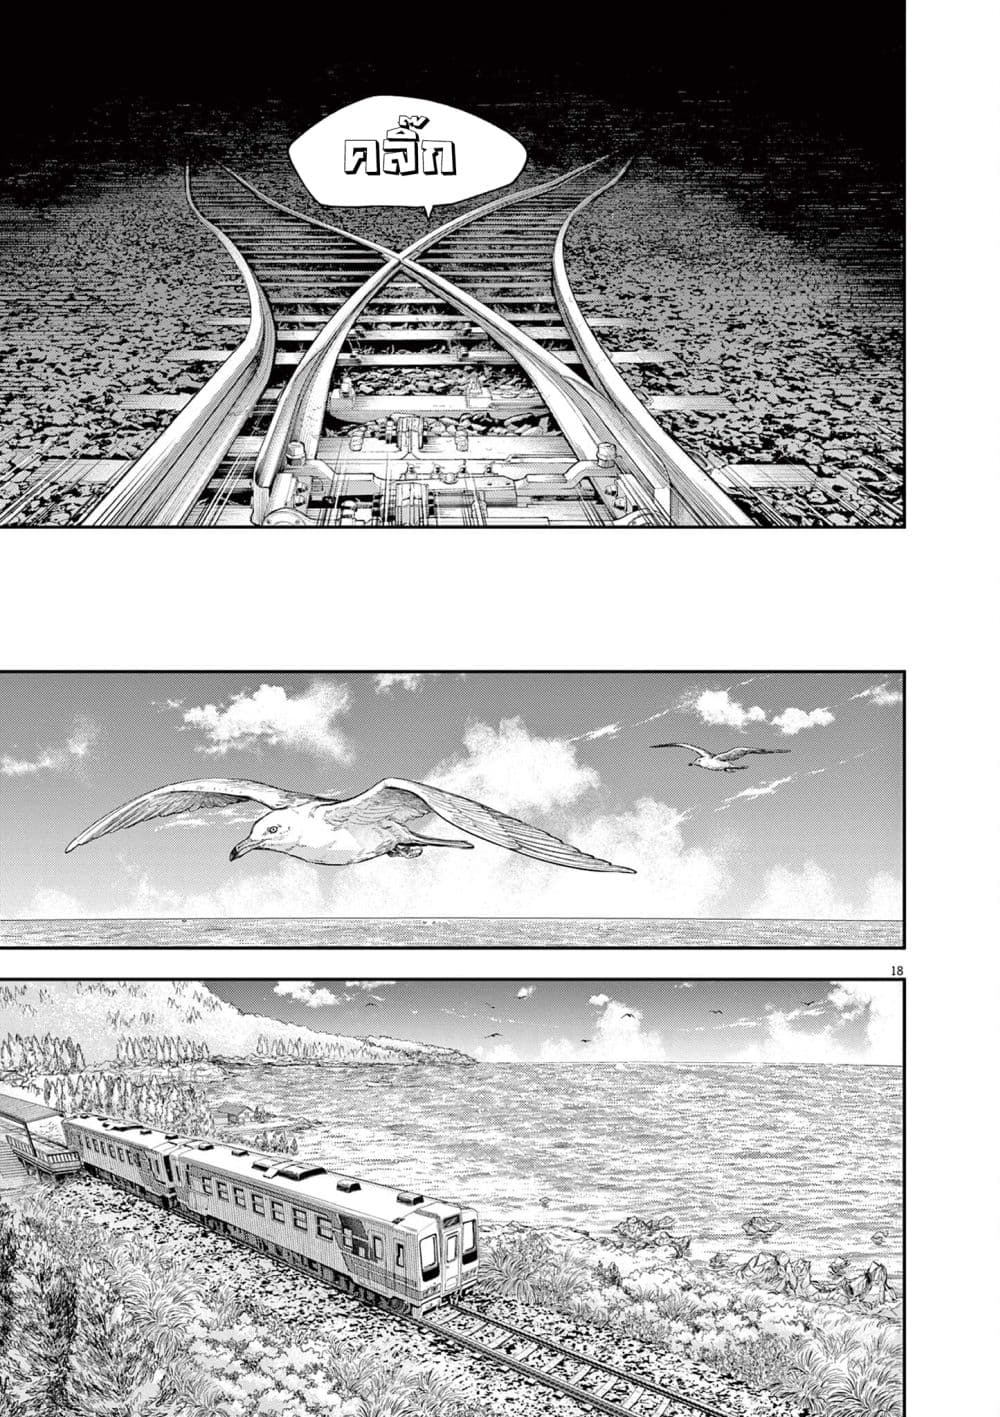 Yumenashi-sensei No Shinroshidou 5-ความปรารถนา คนขับรถไฟ 3